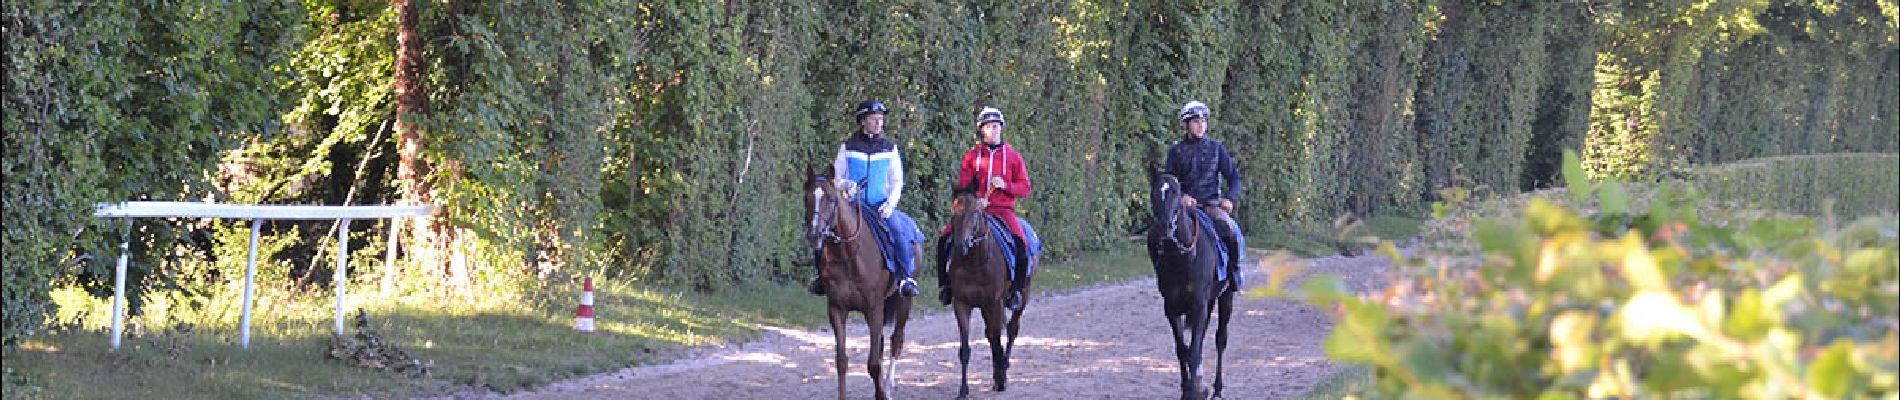 POI Lamorlaye - Entrainement des chevaux au galop - Photo